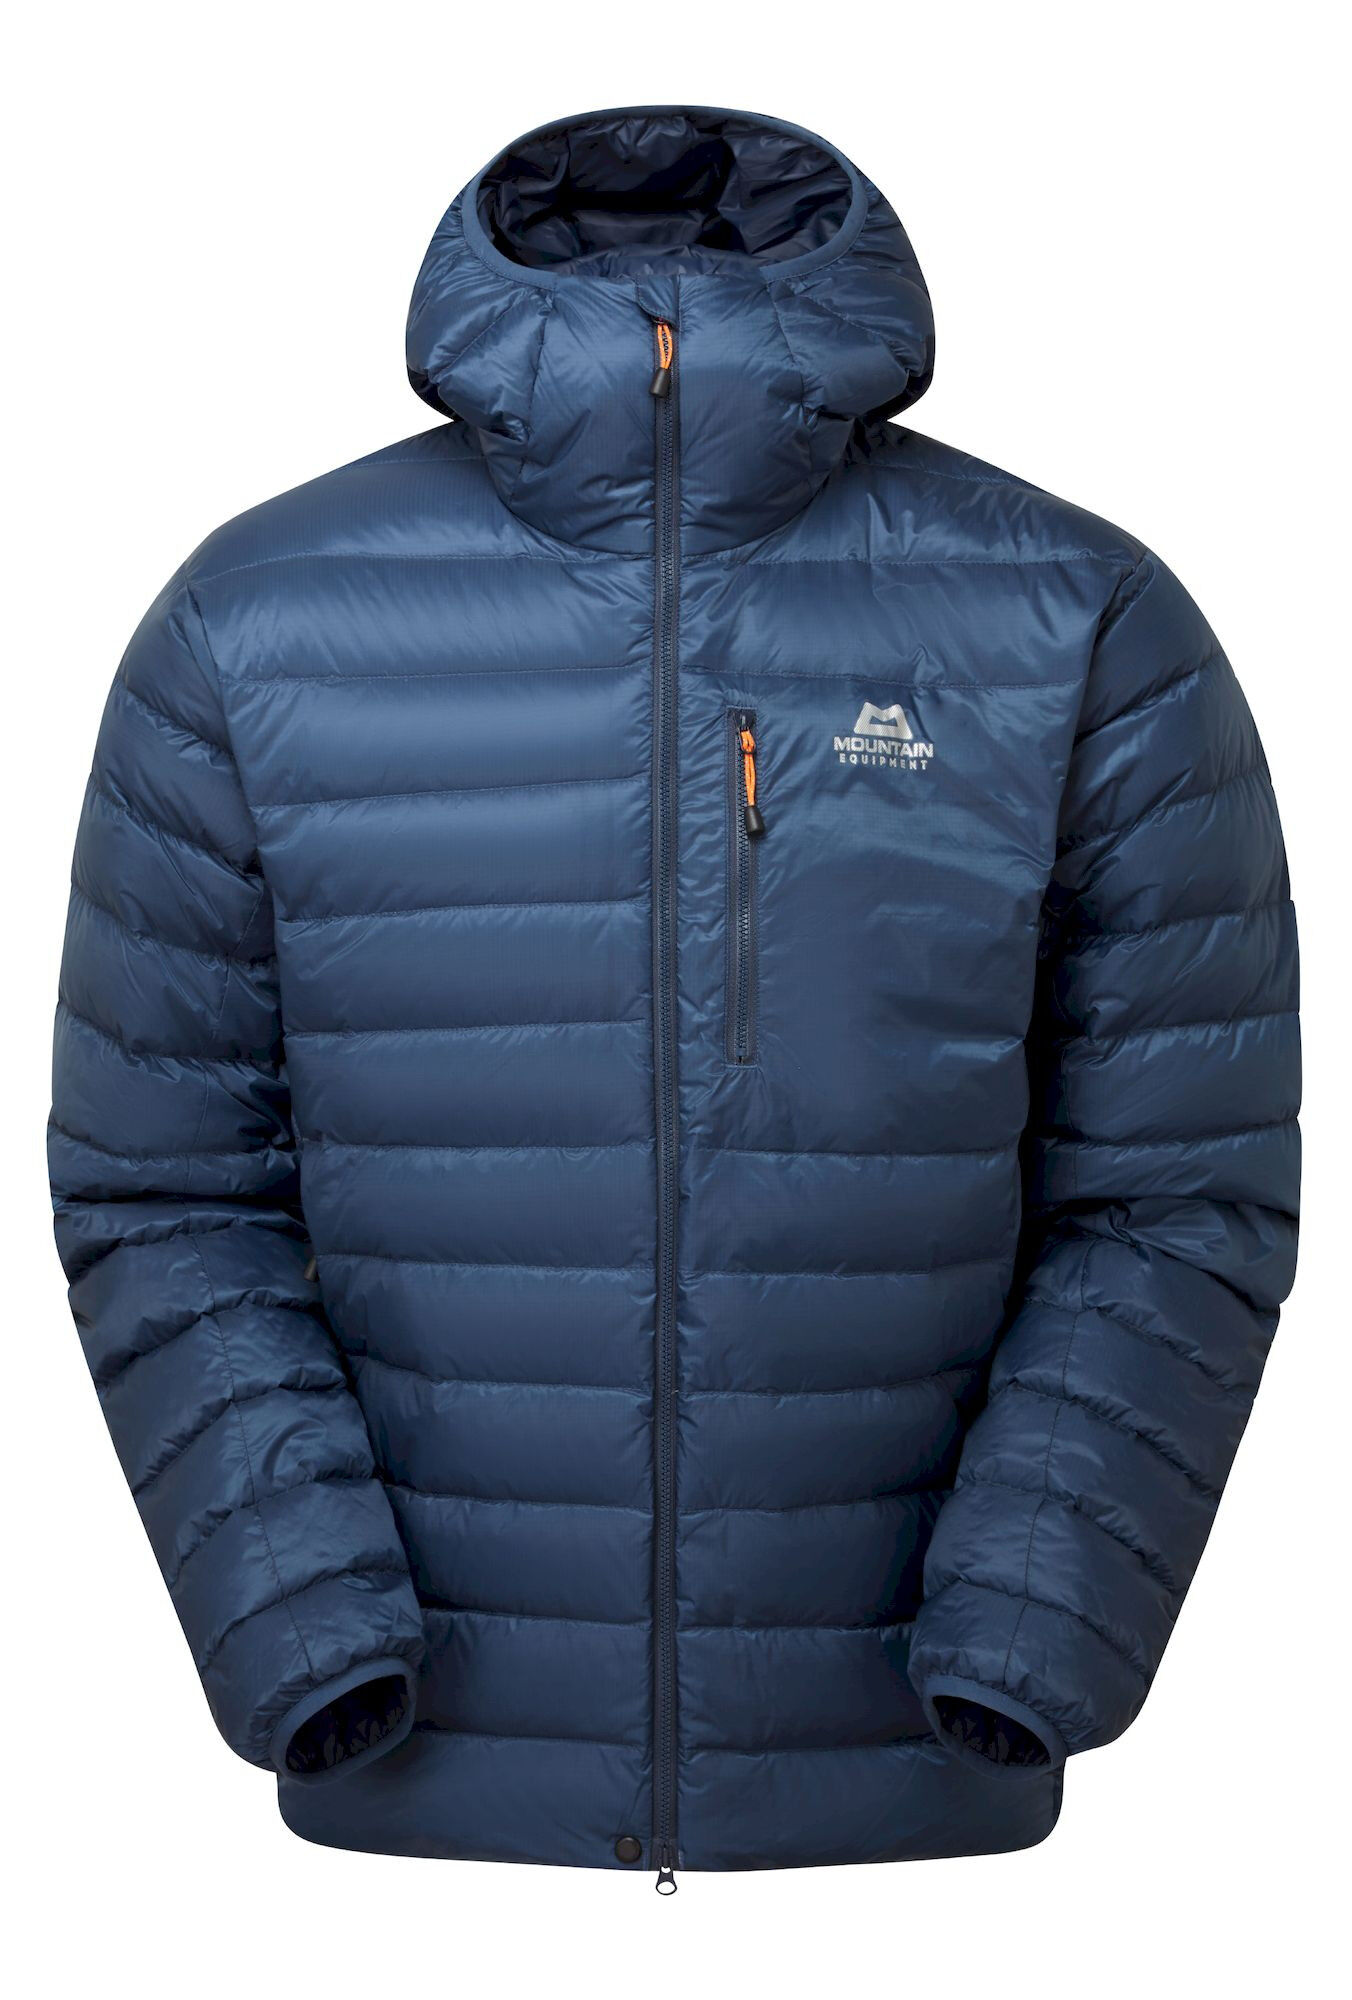 Mountain Equipment Frostline Jacket - Chaqueta de plumas - Hombre | Hardloop